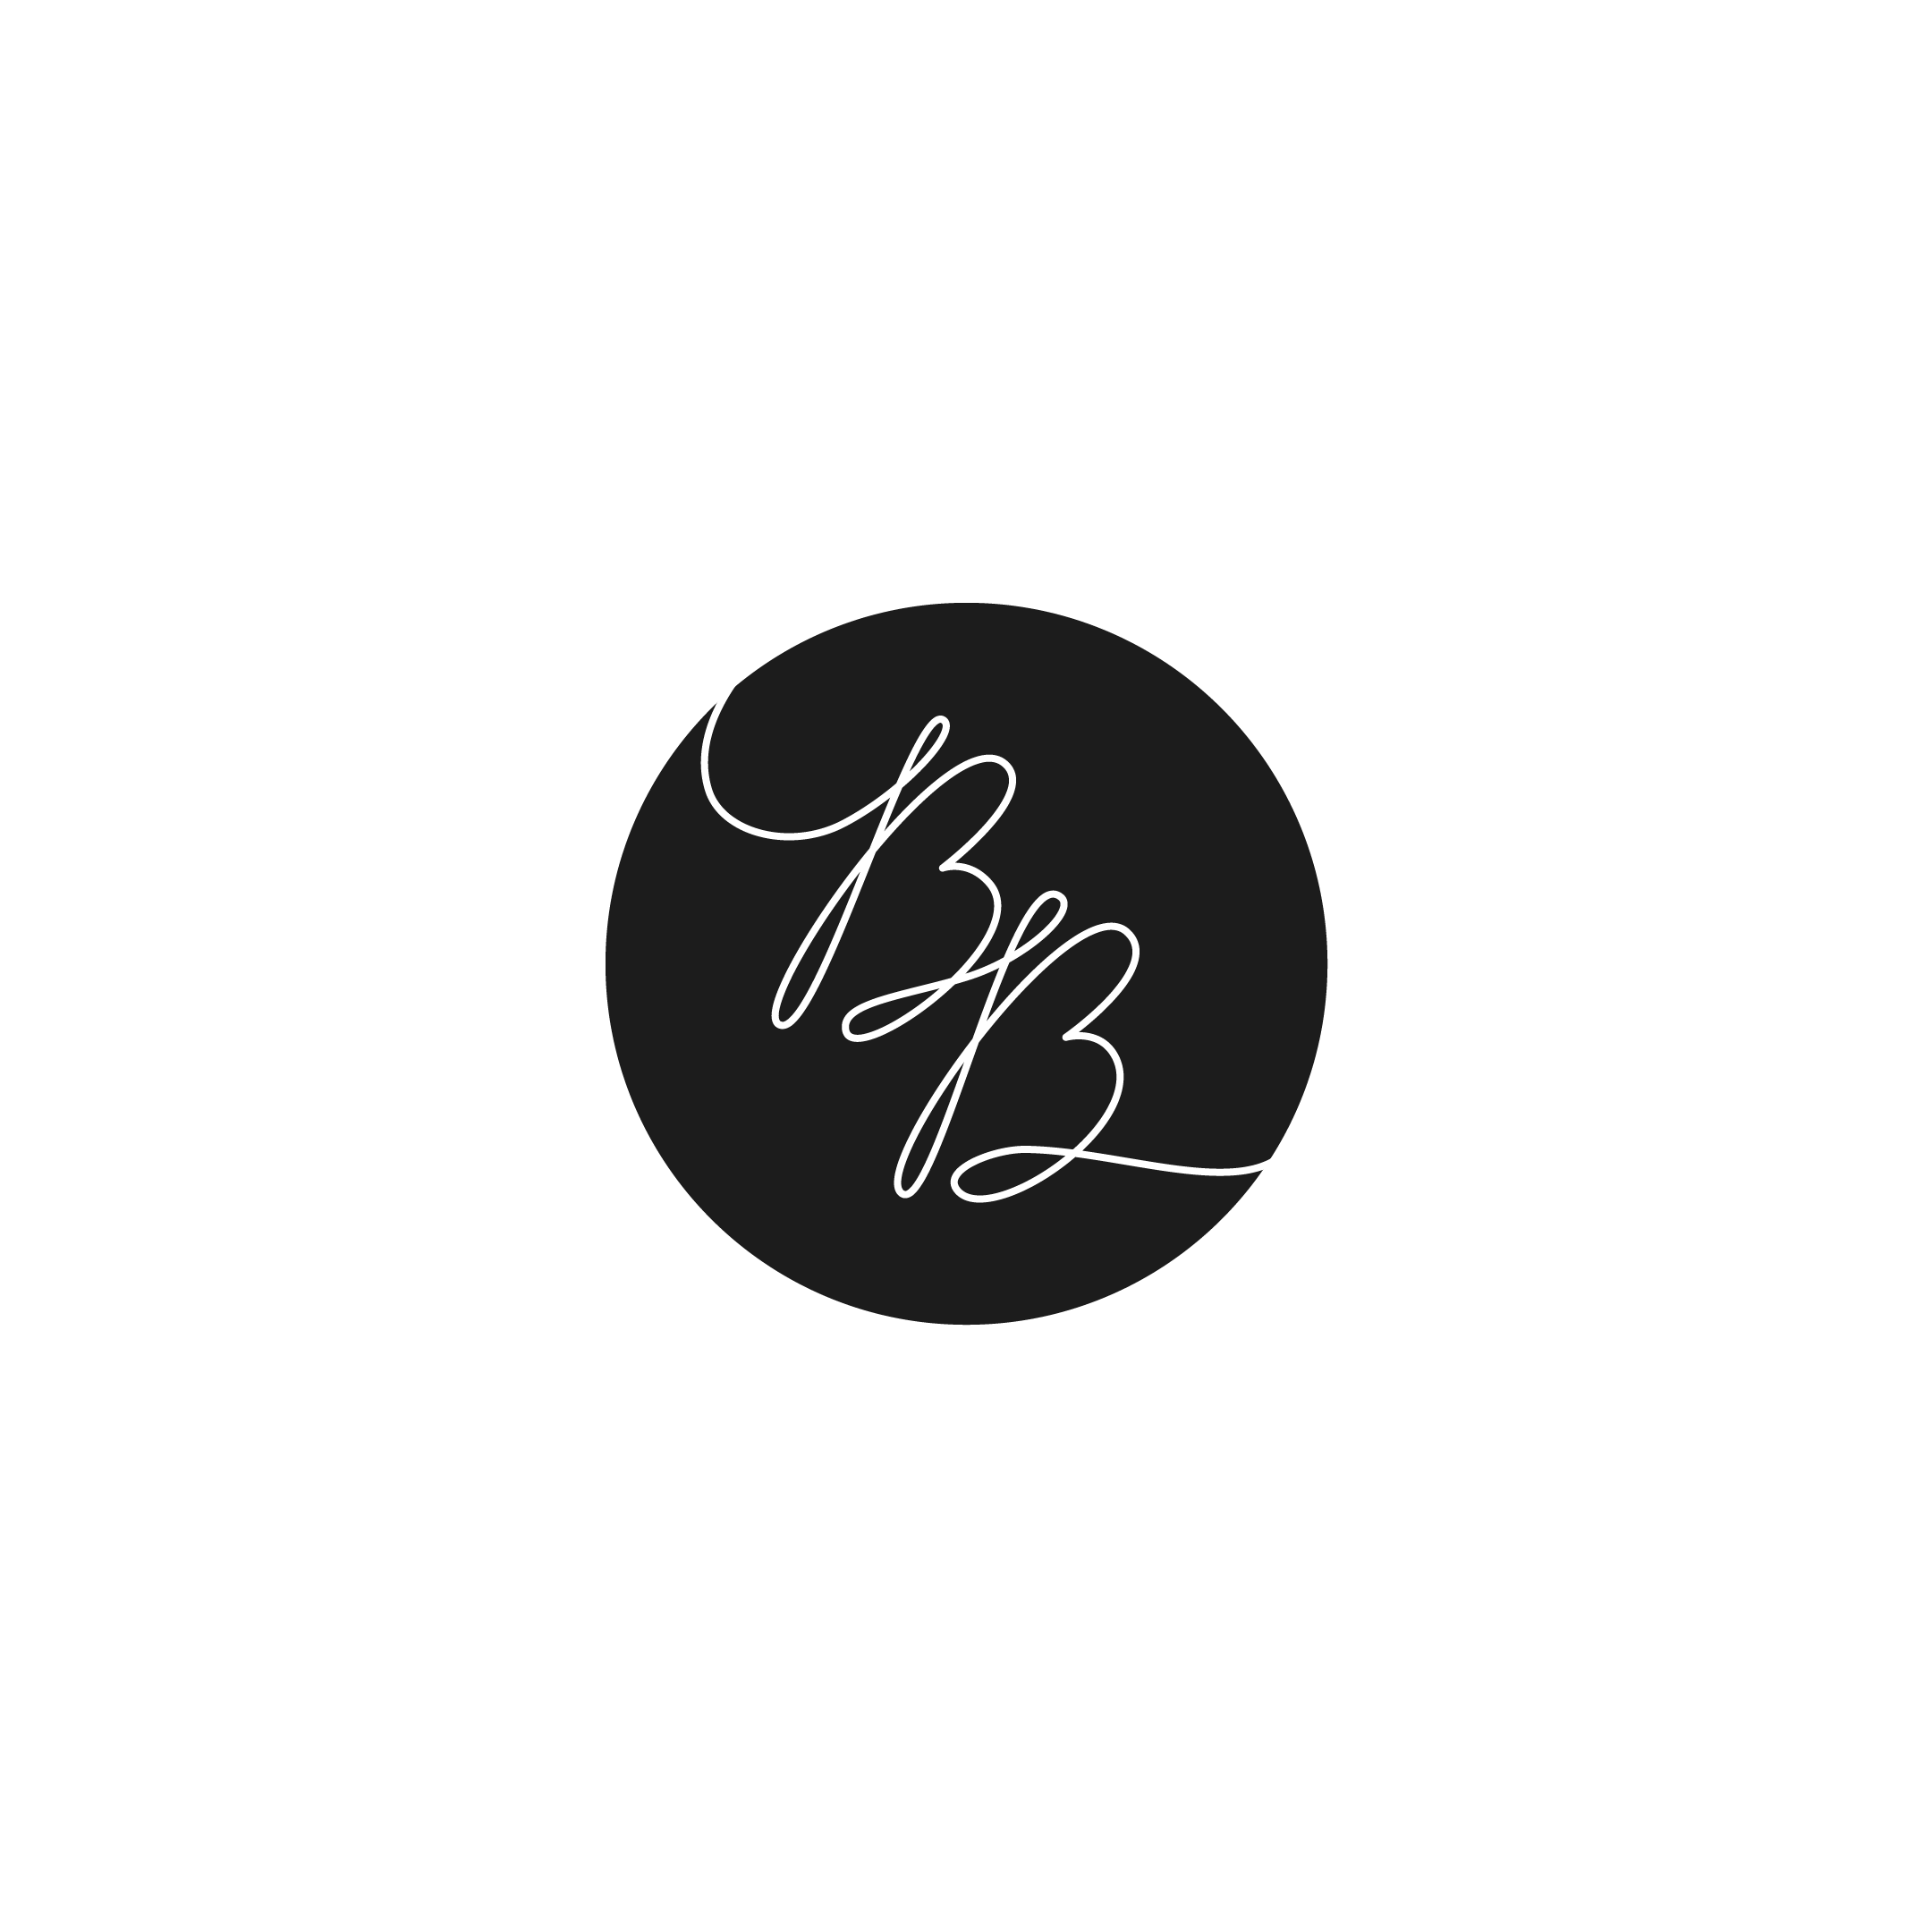 bb logo ideas 10